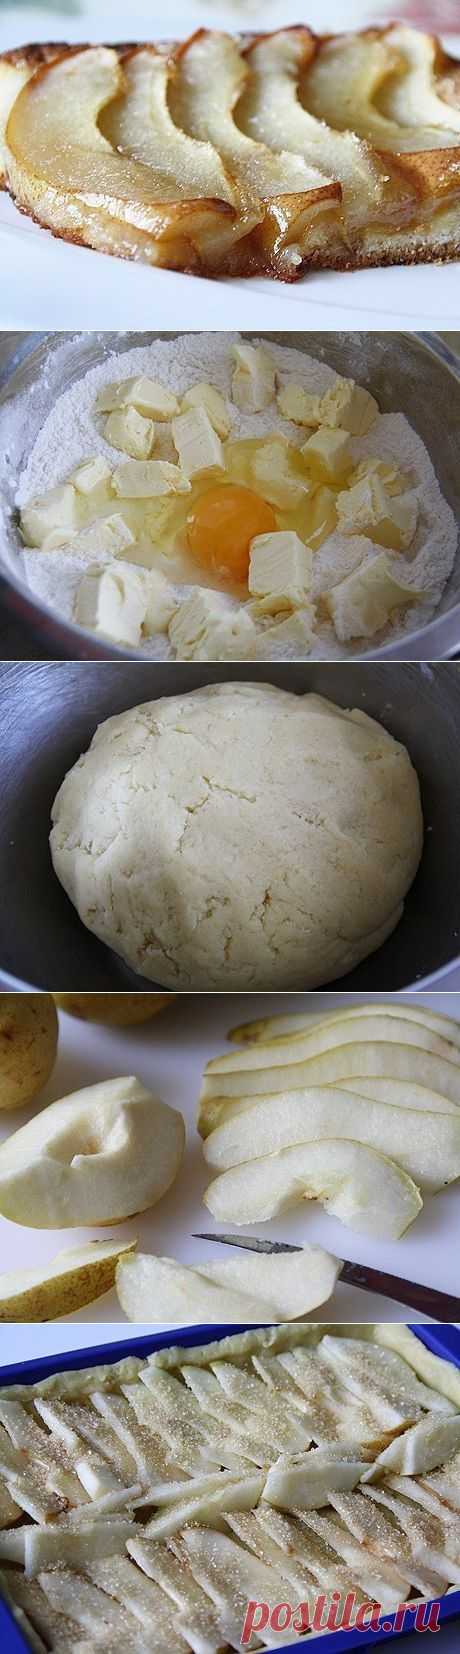 Как приготовить пирог «дюшес» - рецепт, ингридиенты и фотографии